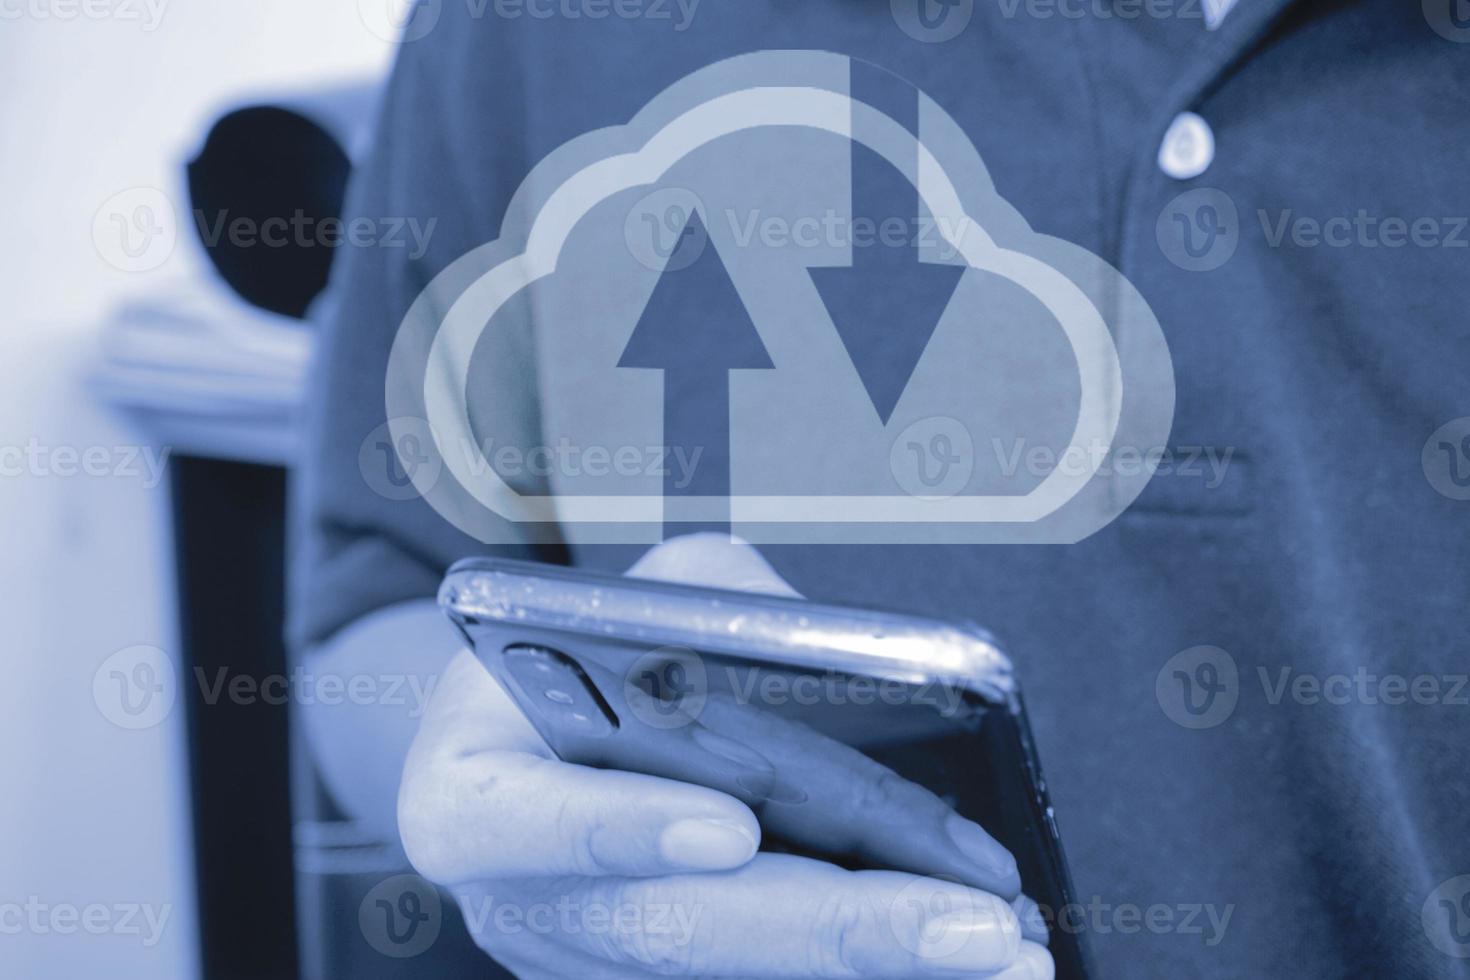 Laden Sie Daten über das Handy und laden Sie Dateien in den Cloud-Speicher hoch. foto